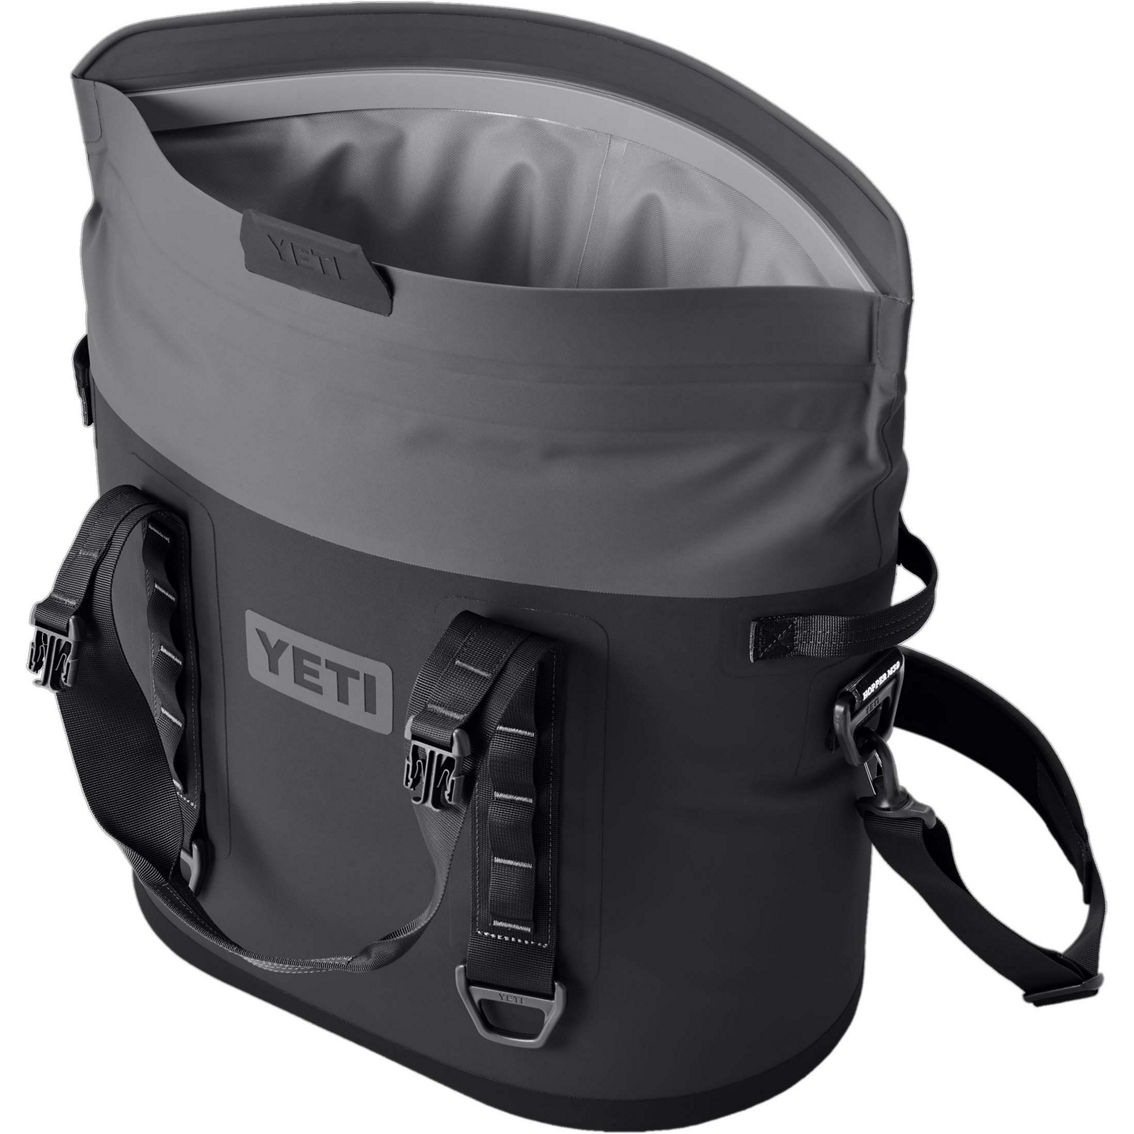 Yeti Hopper M30 2.0 Backpack - Image 2 of 3